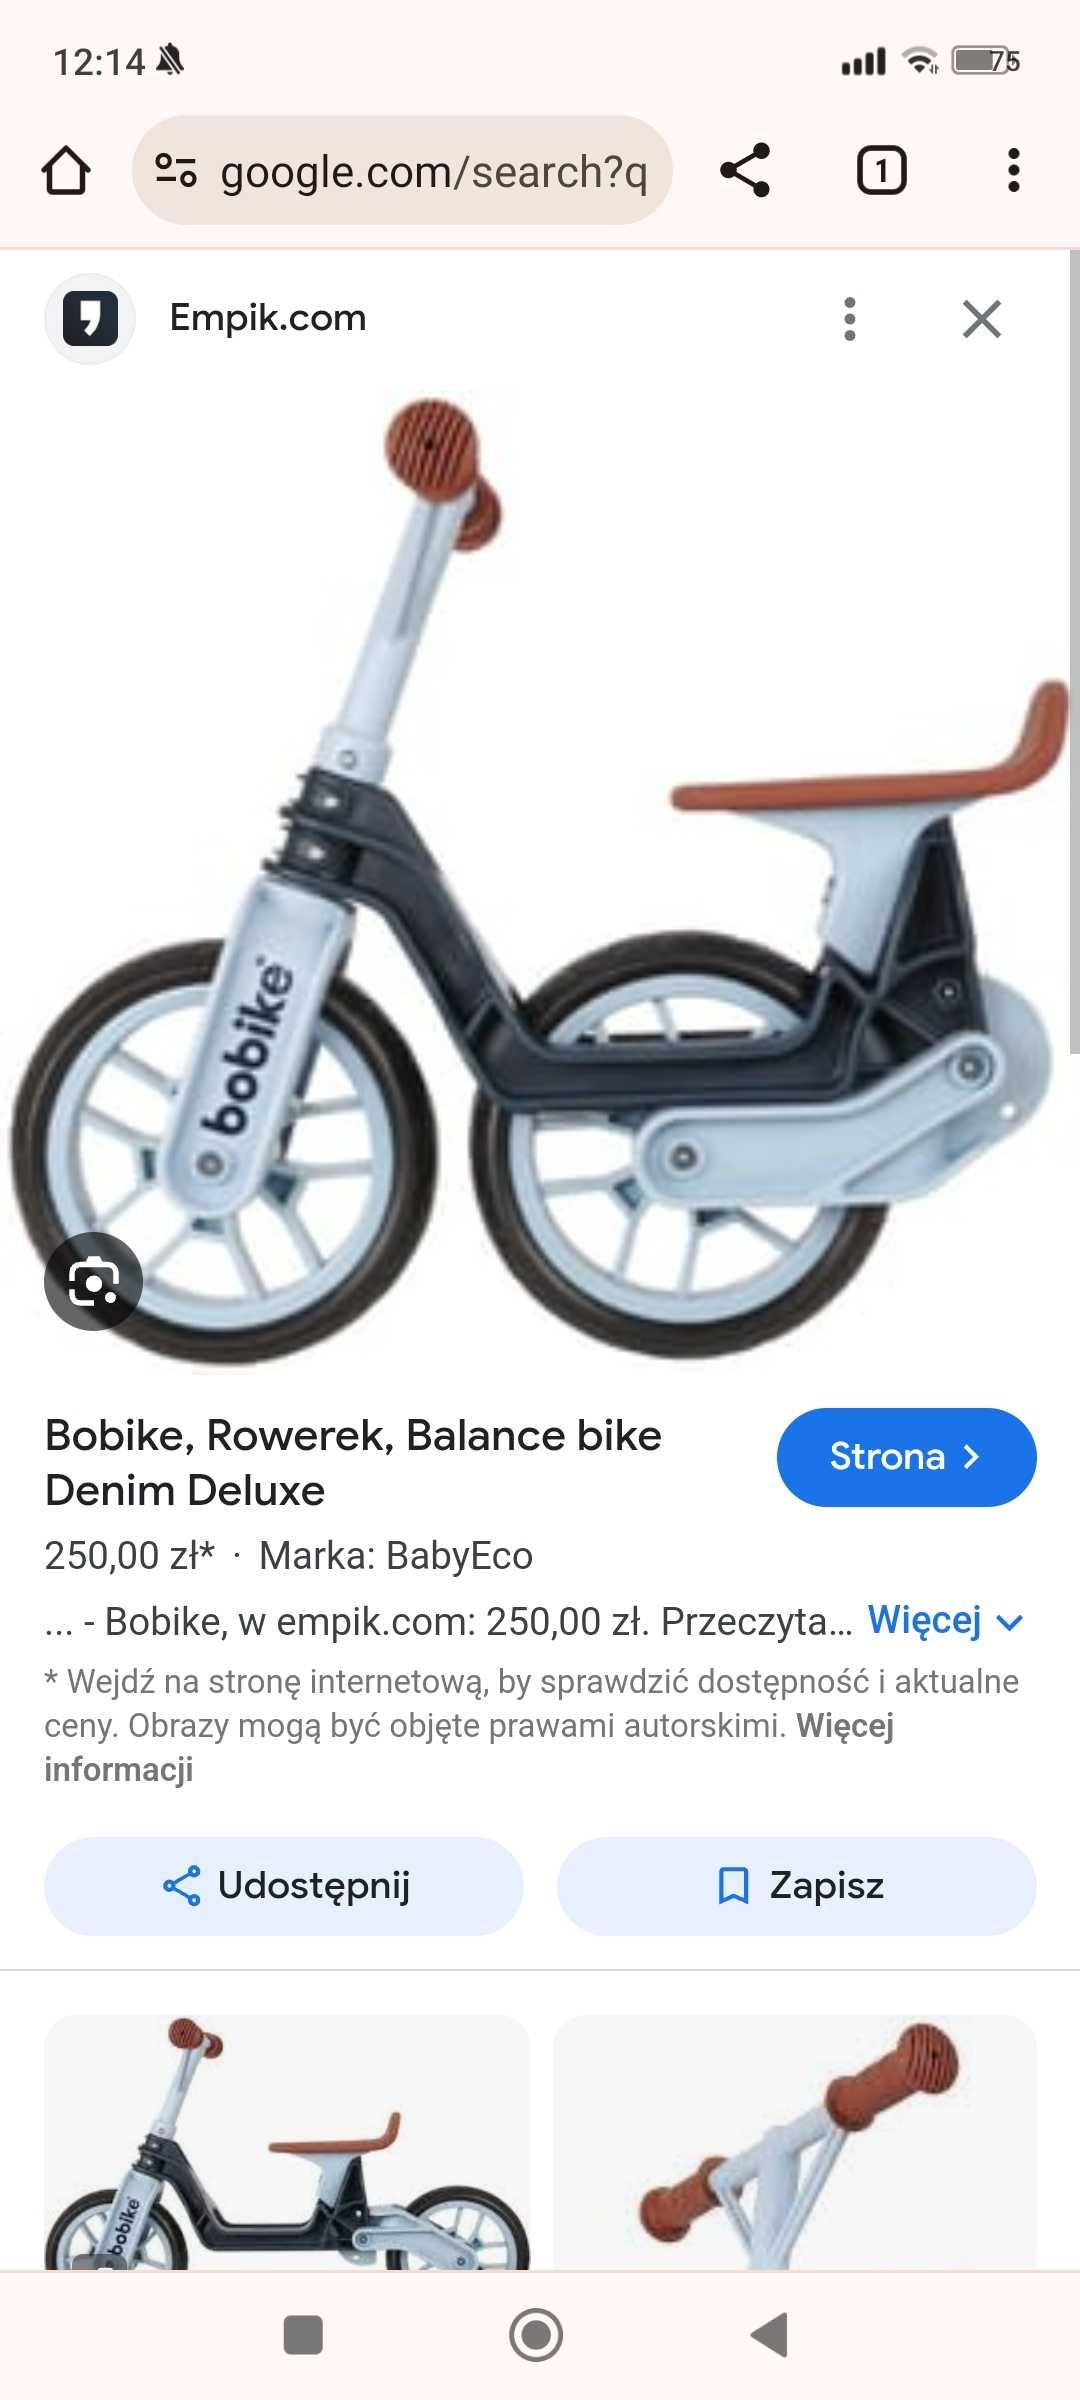 Rower biegowy bobike denim deluxe jak nowy